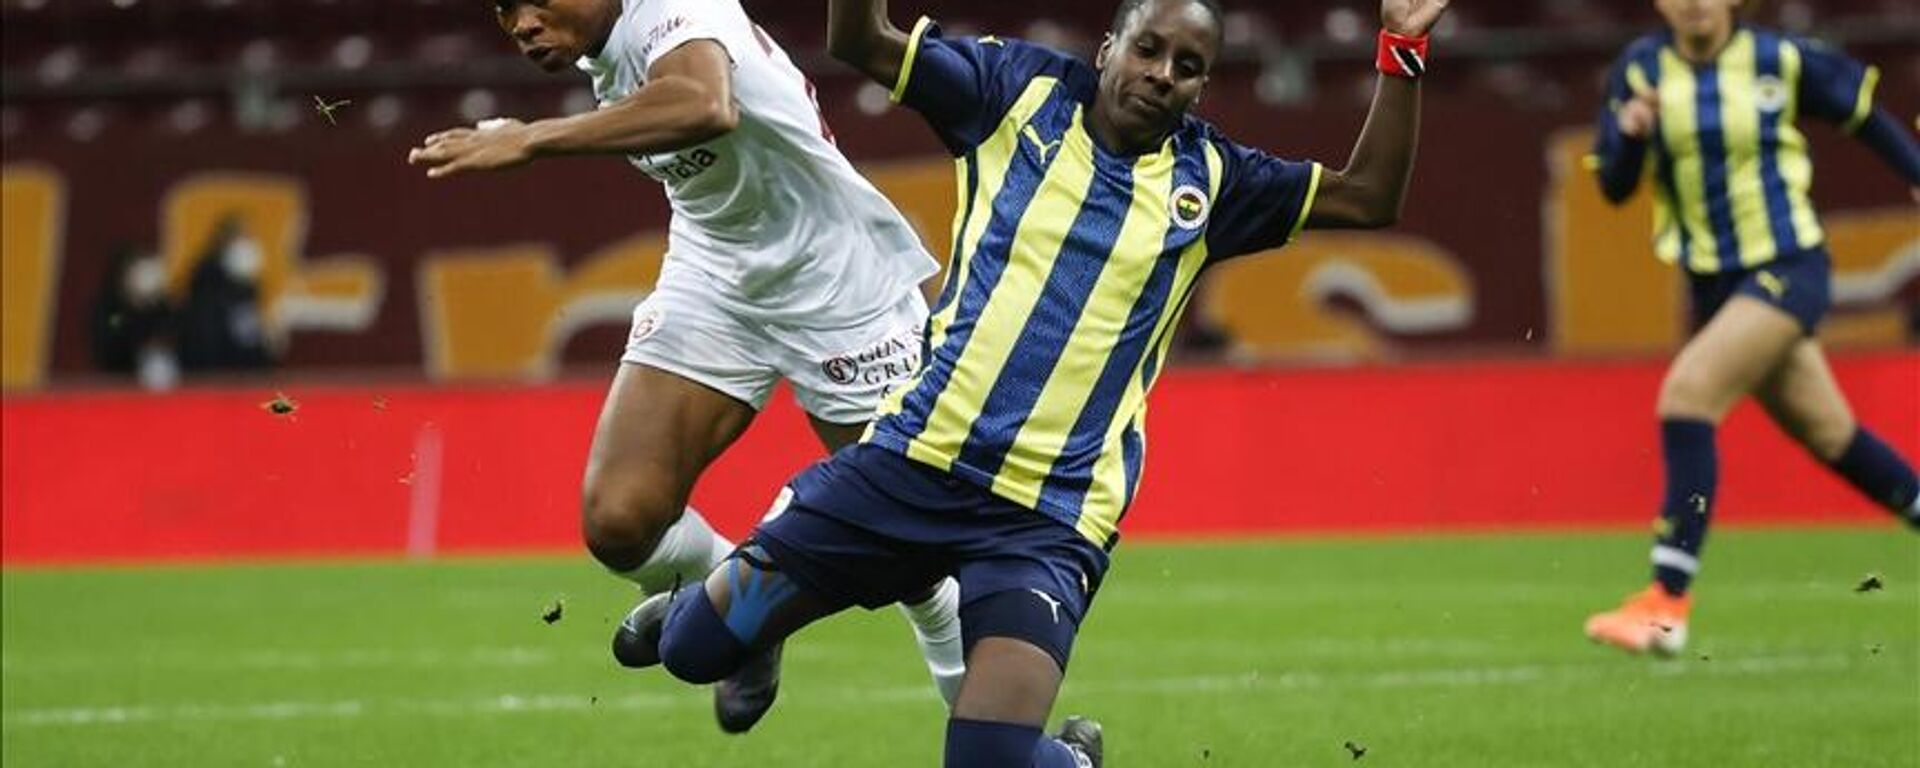 Kadın futbolundaki ilk derbi heyecanında Fenerbahçe, Galatasaray'ı 7-0 mağlup etti - Sputnik Türkiye, 1920, 07.12.2021